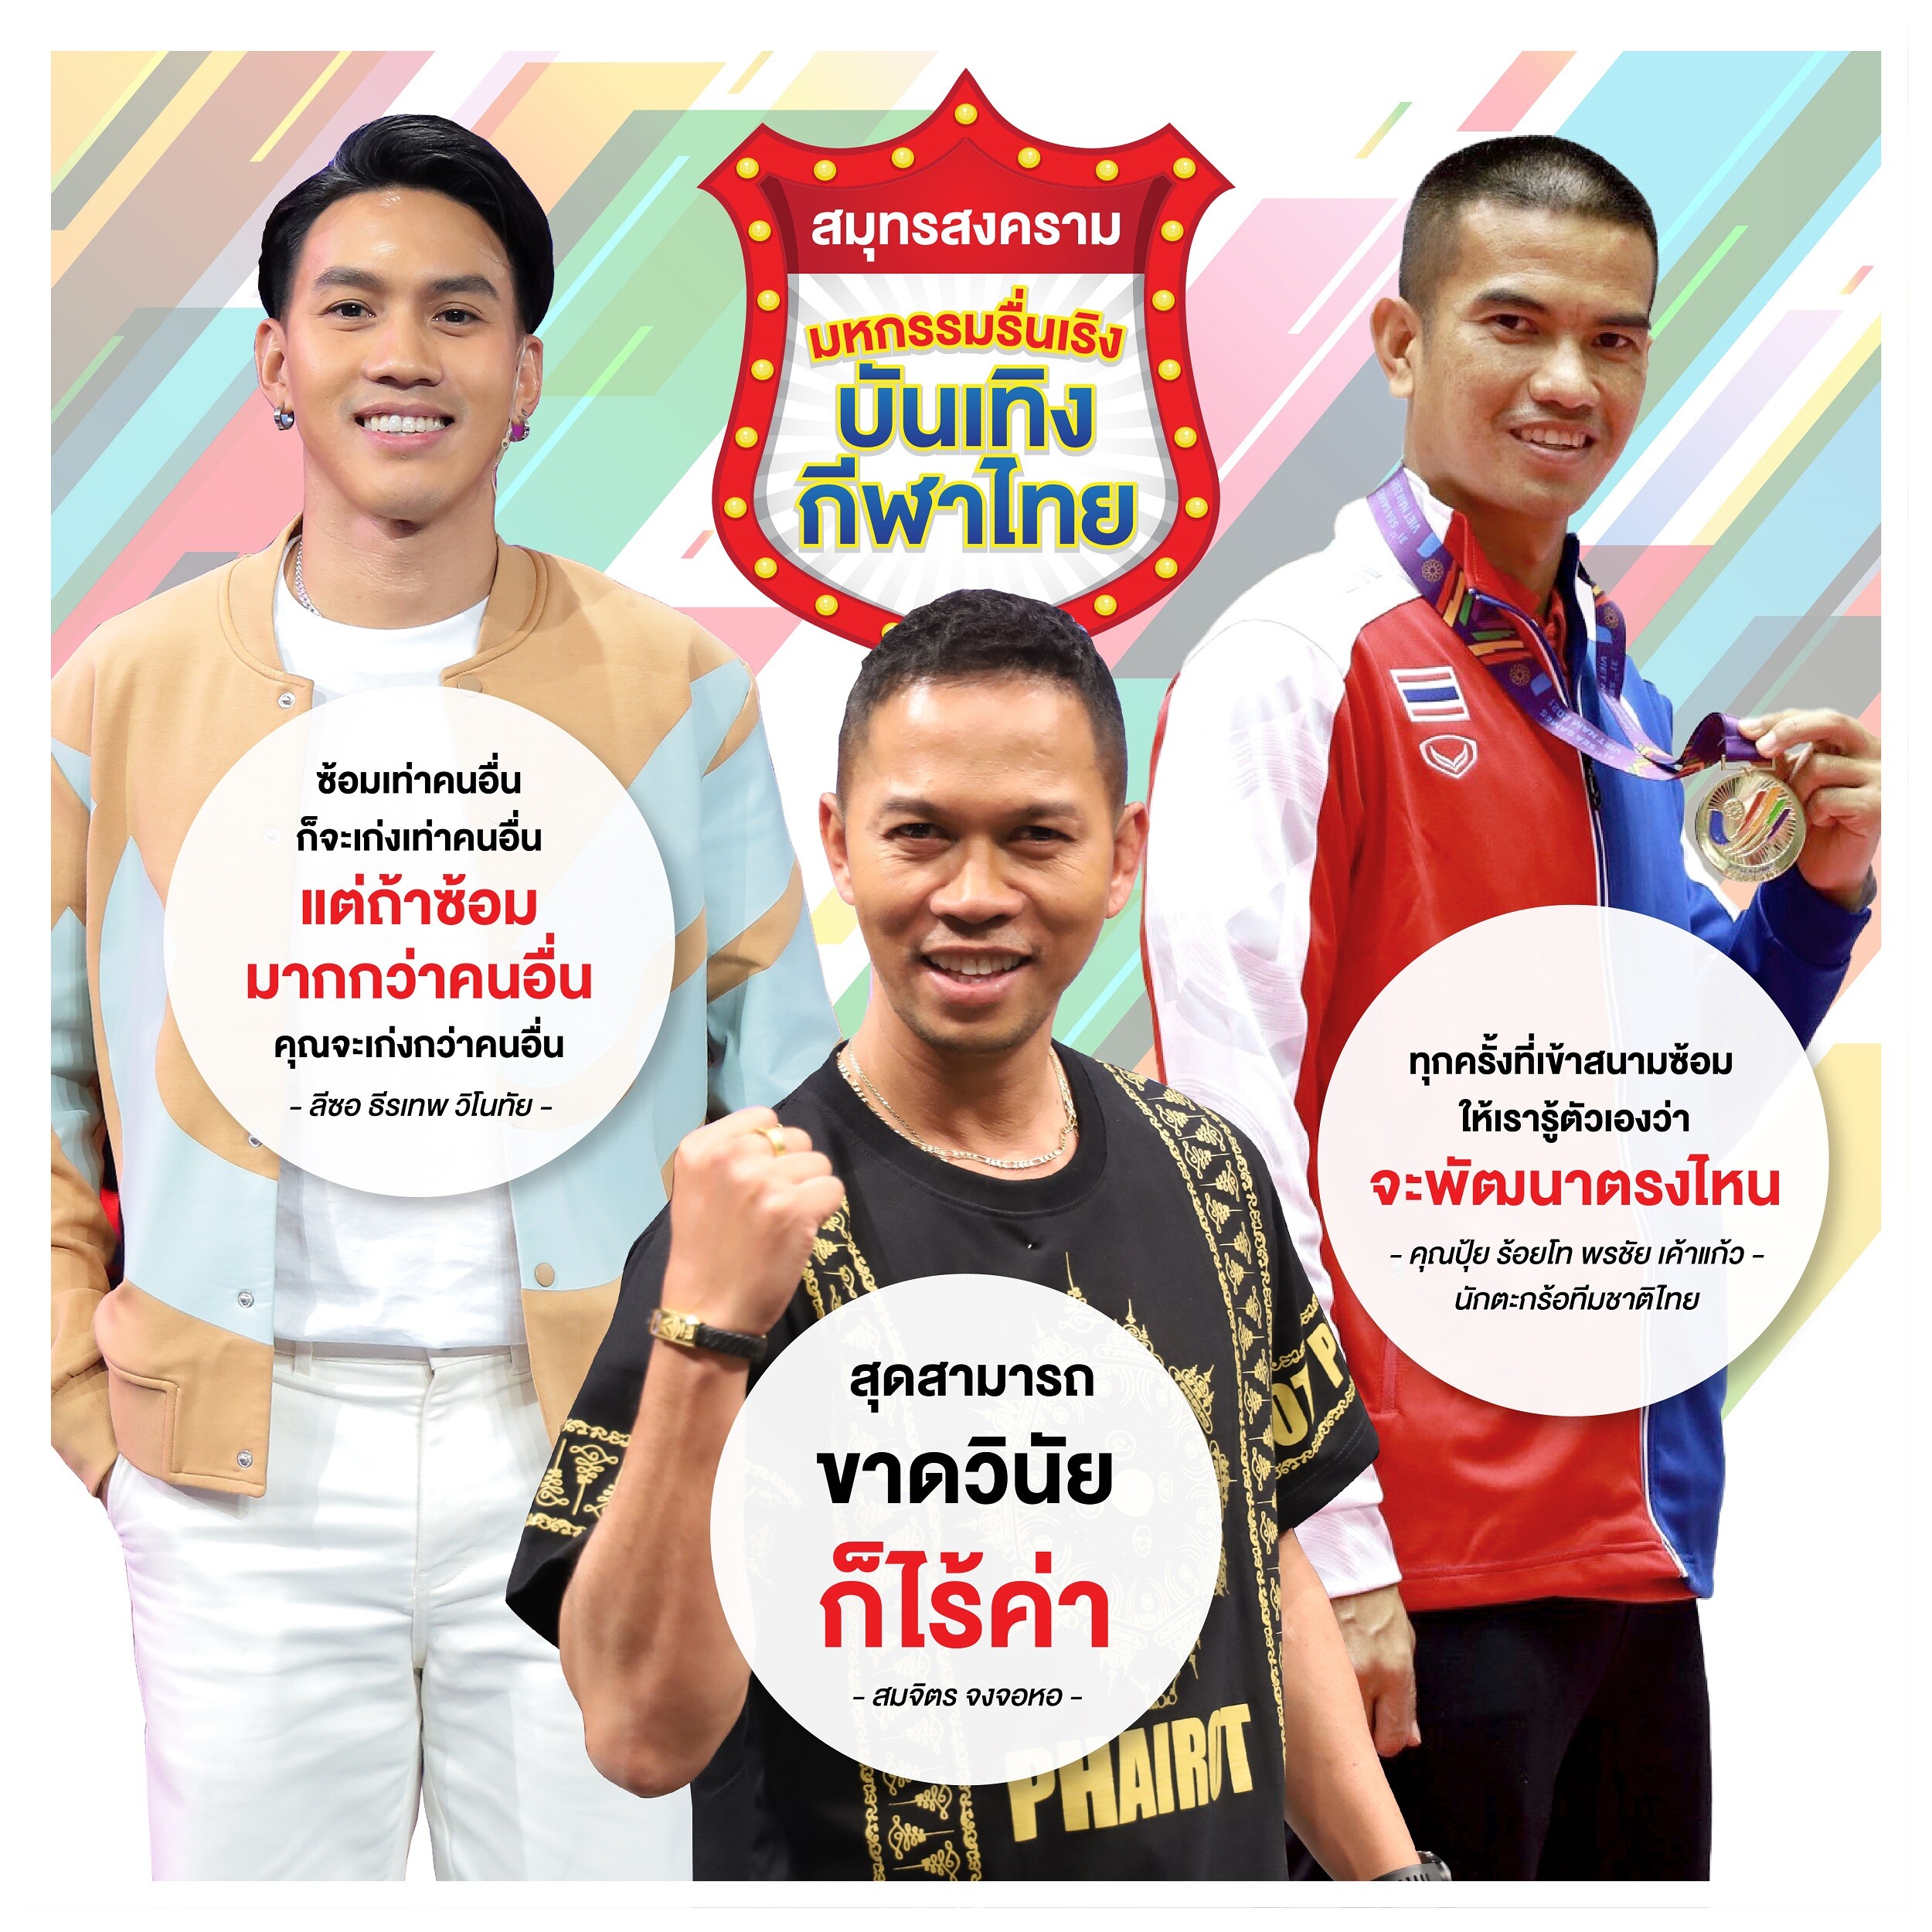 ทัพไอดอลนักกีฬาไทย ร่วมปลุกฝันเยาวชน สร้างแรงบันดาลใจ ก้าวสู่นักกีฬาระดับโลก ในงาน "สมุทรสงคราม มหกรรมรื่นเริง บันเทิงกีฬาไทย"